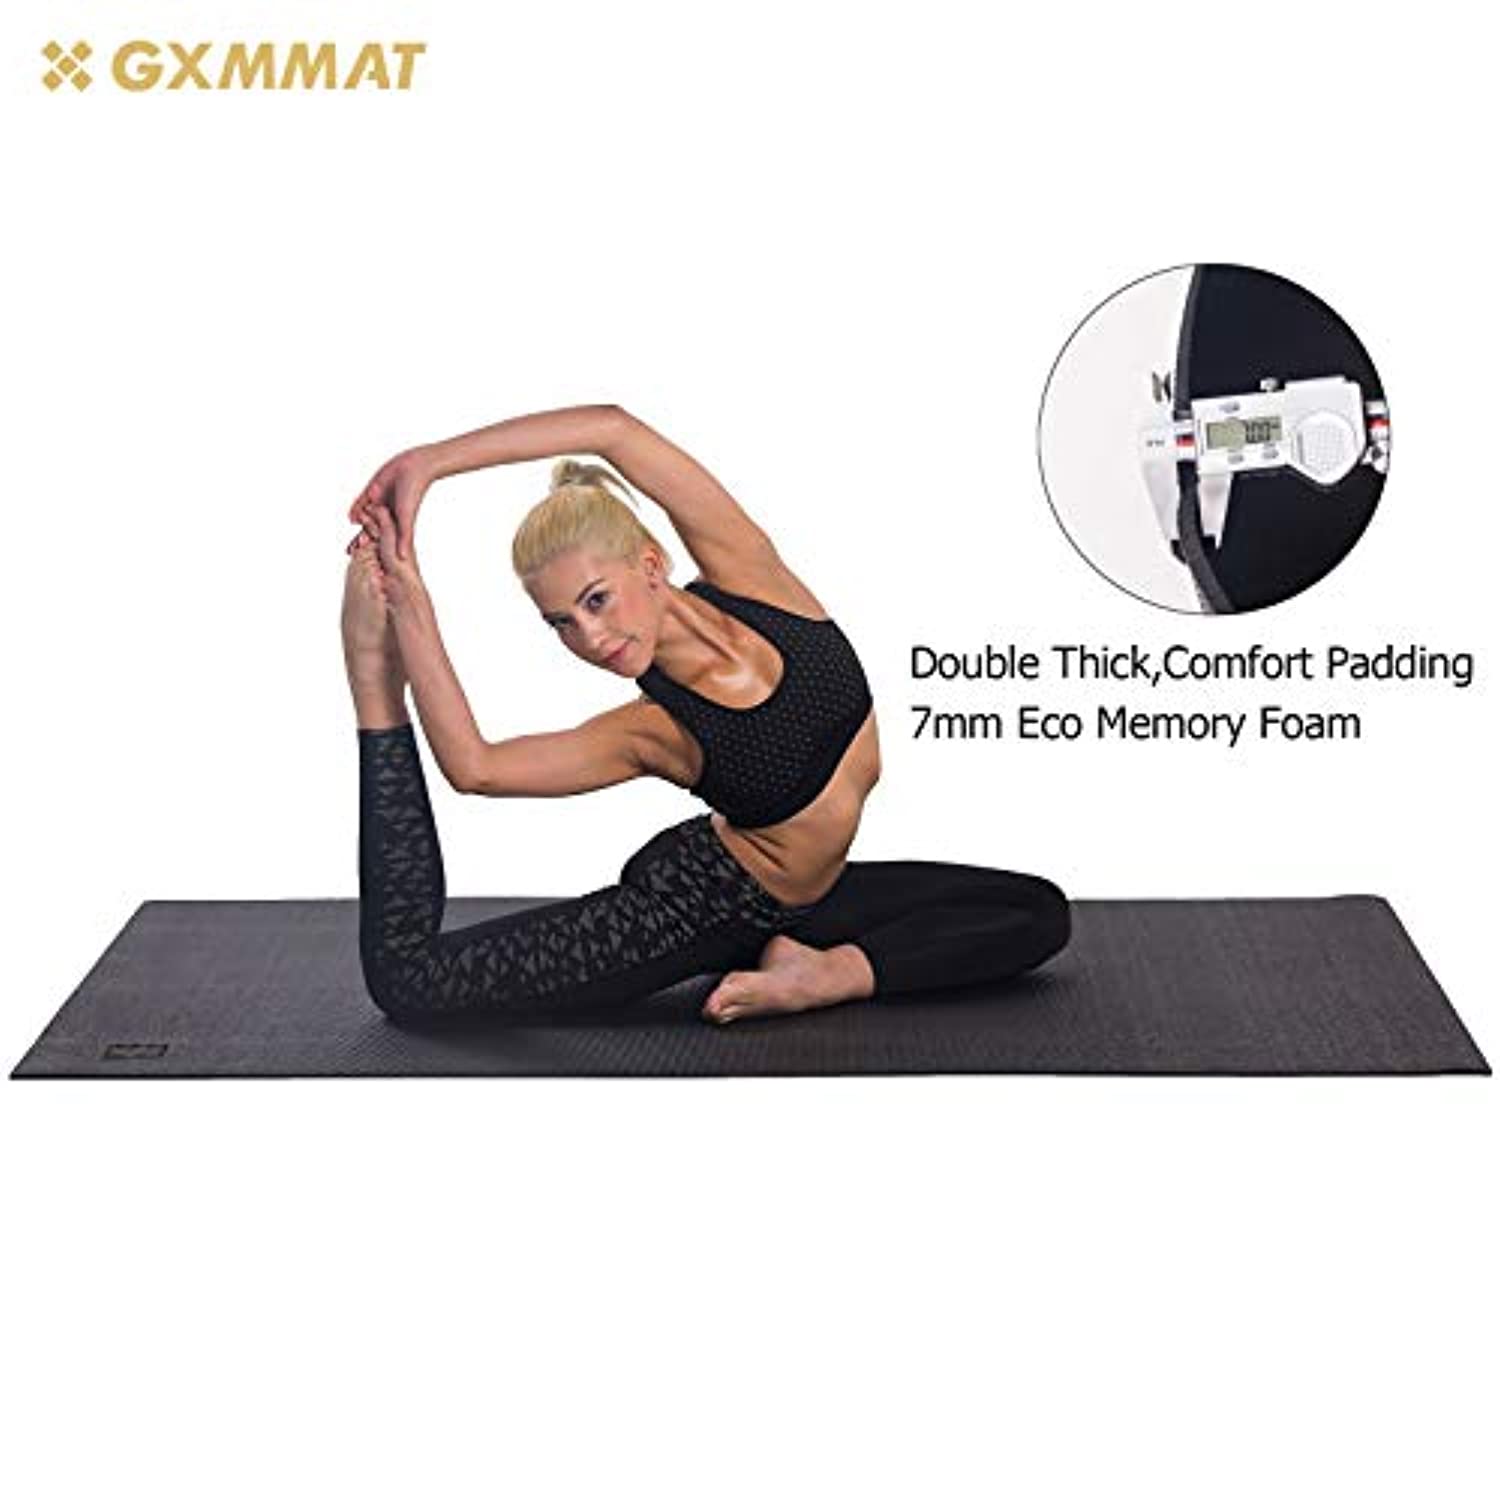 HxG. Esterillas de Yoga Pilates Fitness para gimnasio en casa  antideslizante, alfombra suave y cómoda para hacer ejercicio